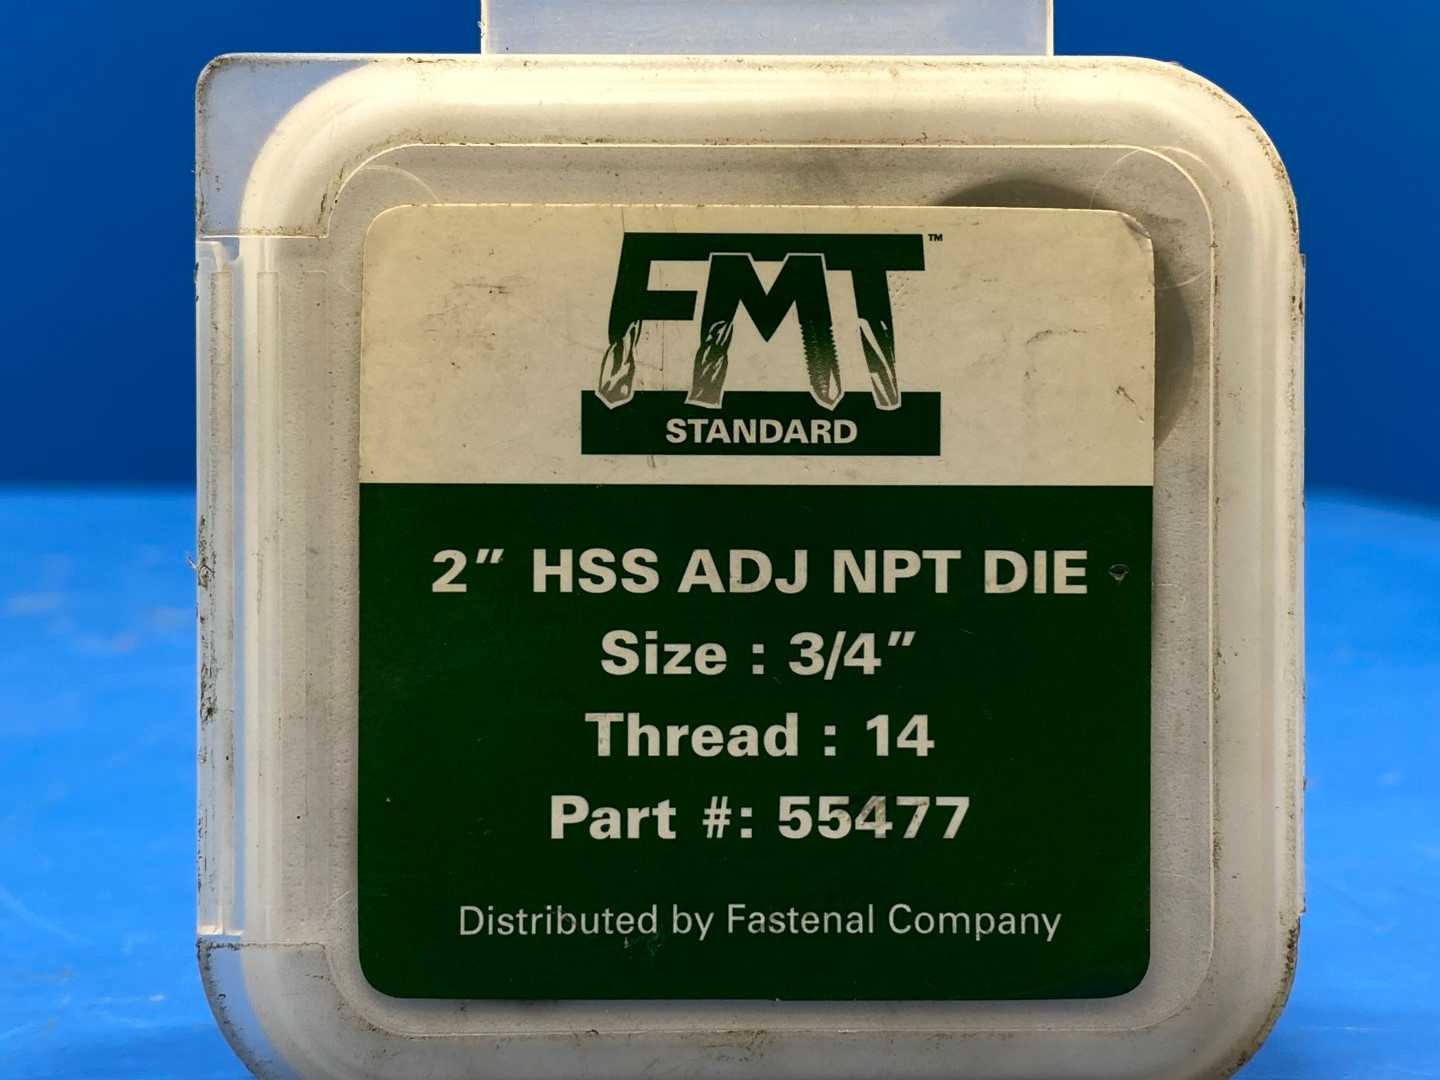 FMT Standard 2" HSS ADJ NPT DIE Size: 3\4 Thread 14 PRT NO: 55477